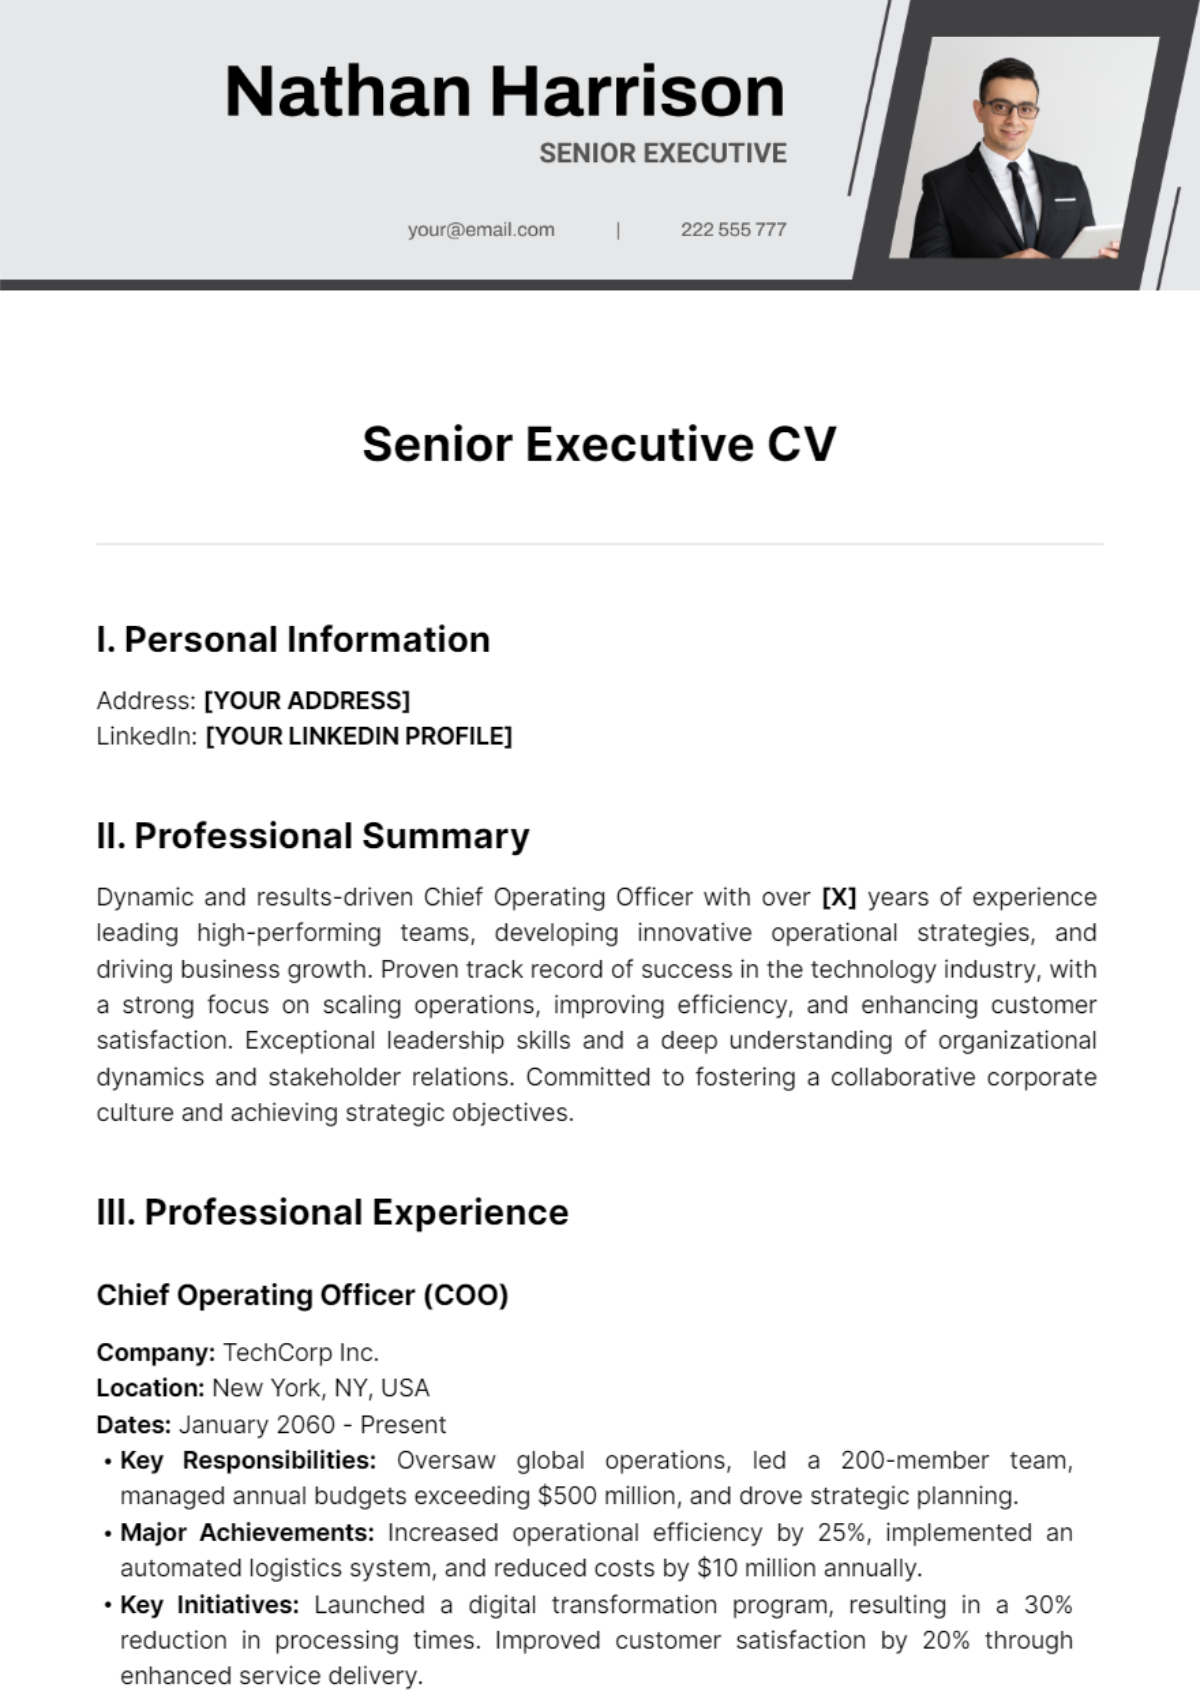 Senior Executive CV Template